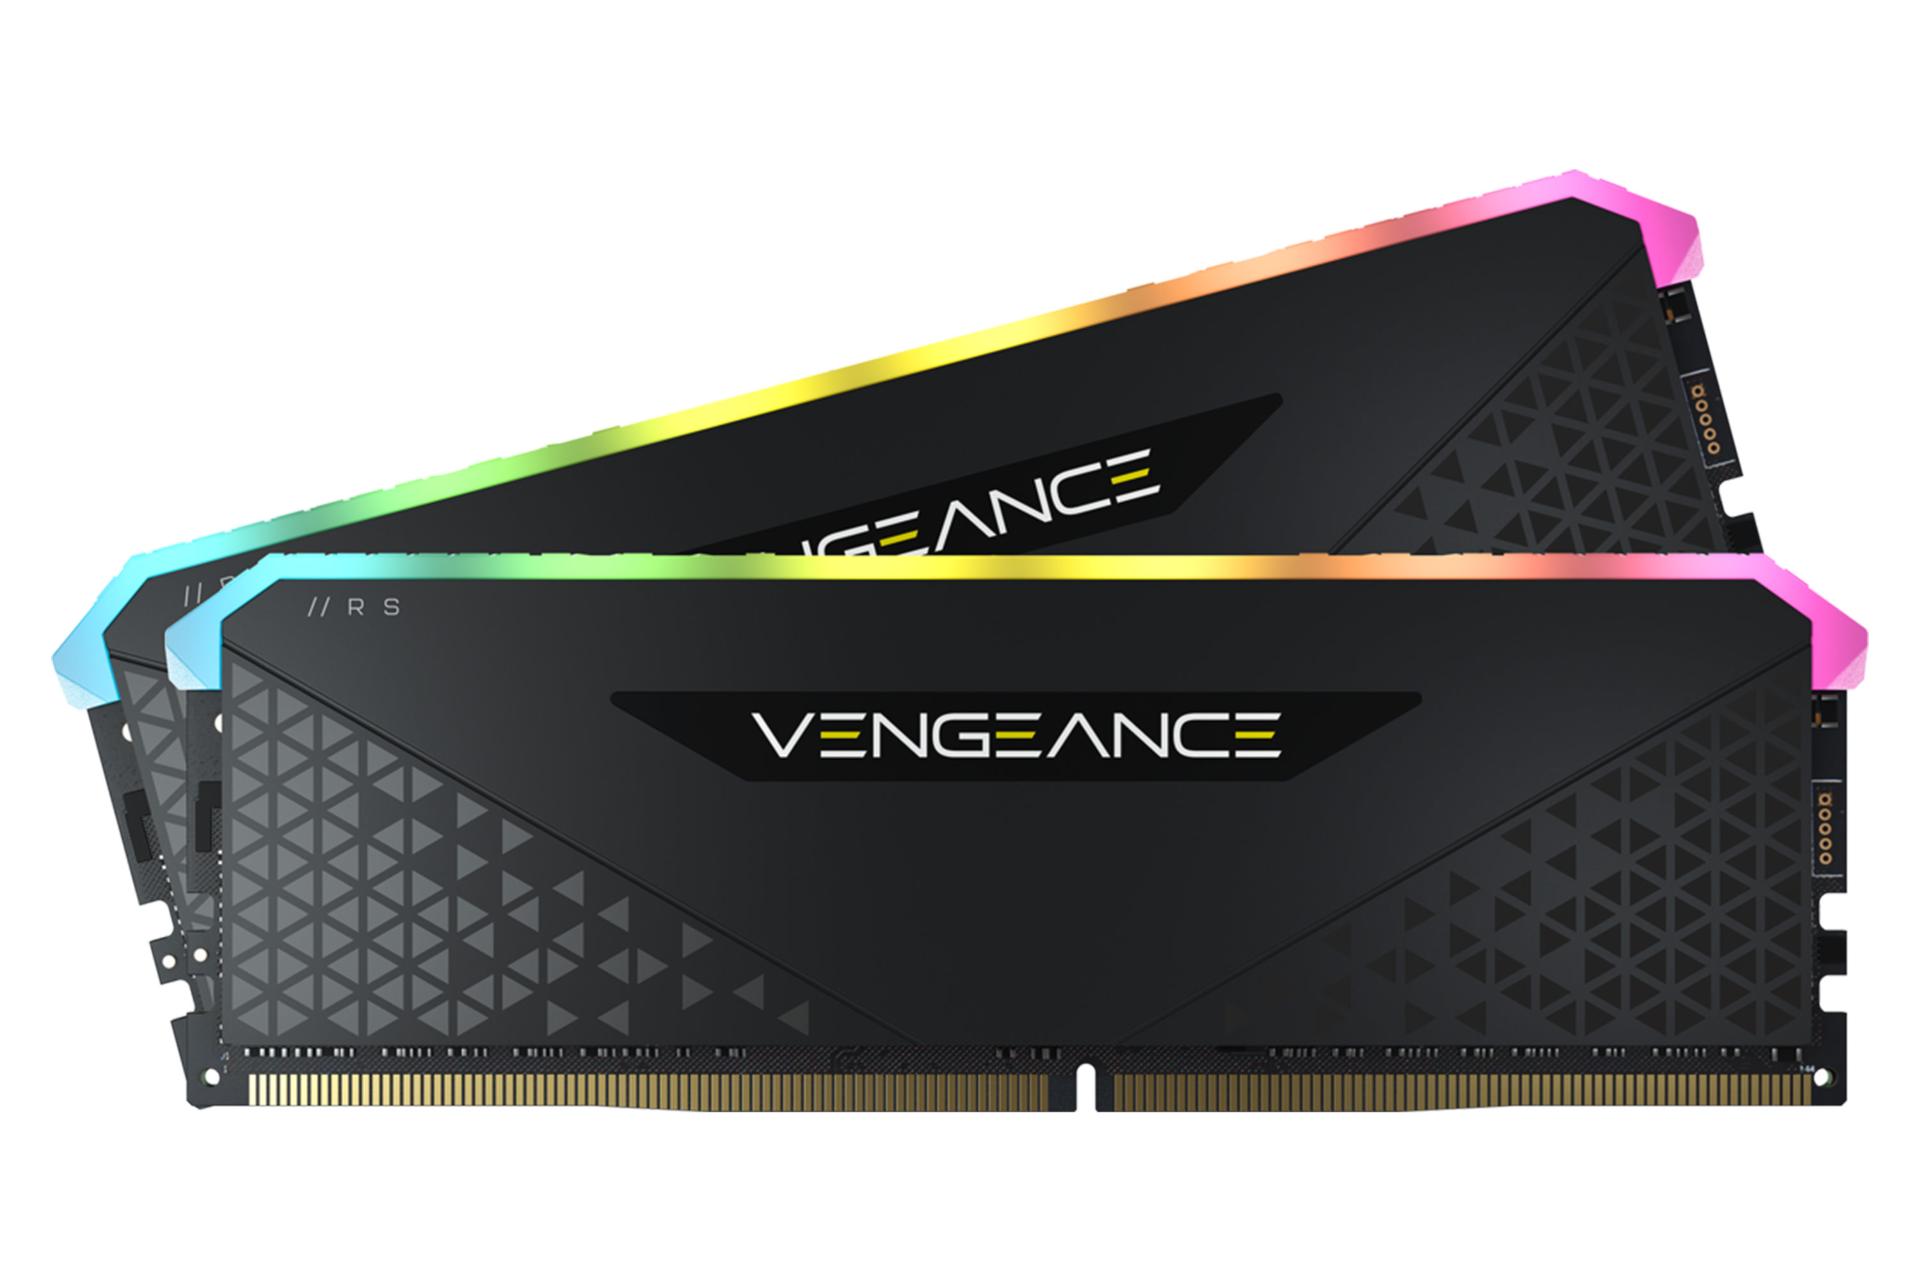 مرجع متخصصين ايران  رم كورسير VENGEANCE RGB RS ظرفيت 32 گيگابايت (2x16) از نوع DDR4-3200 